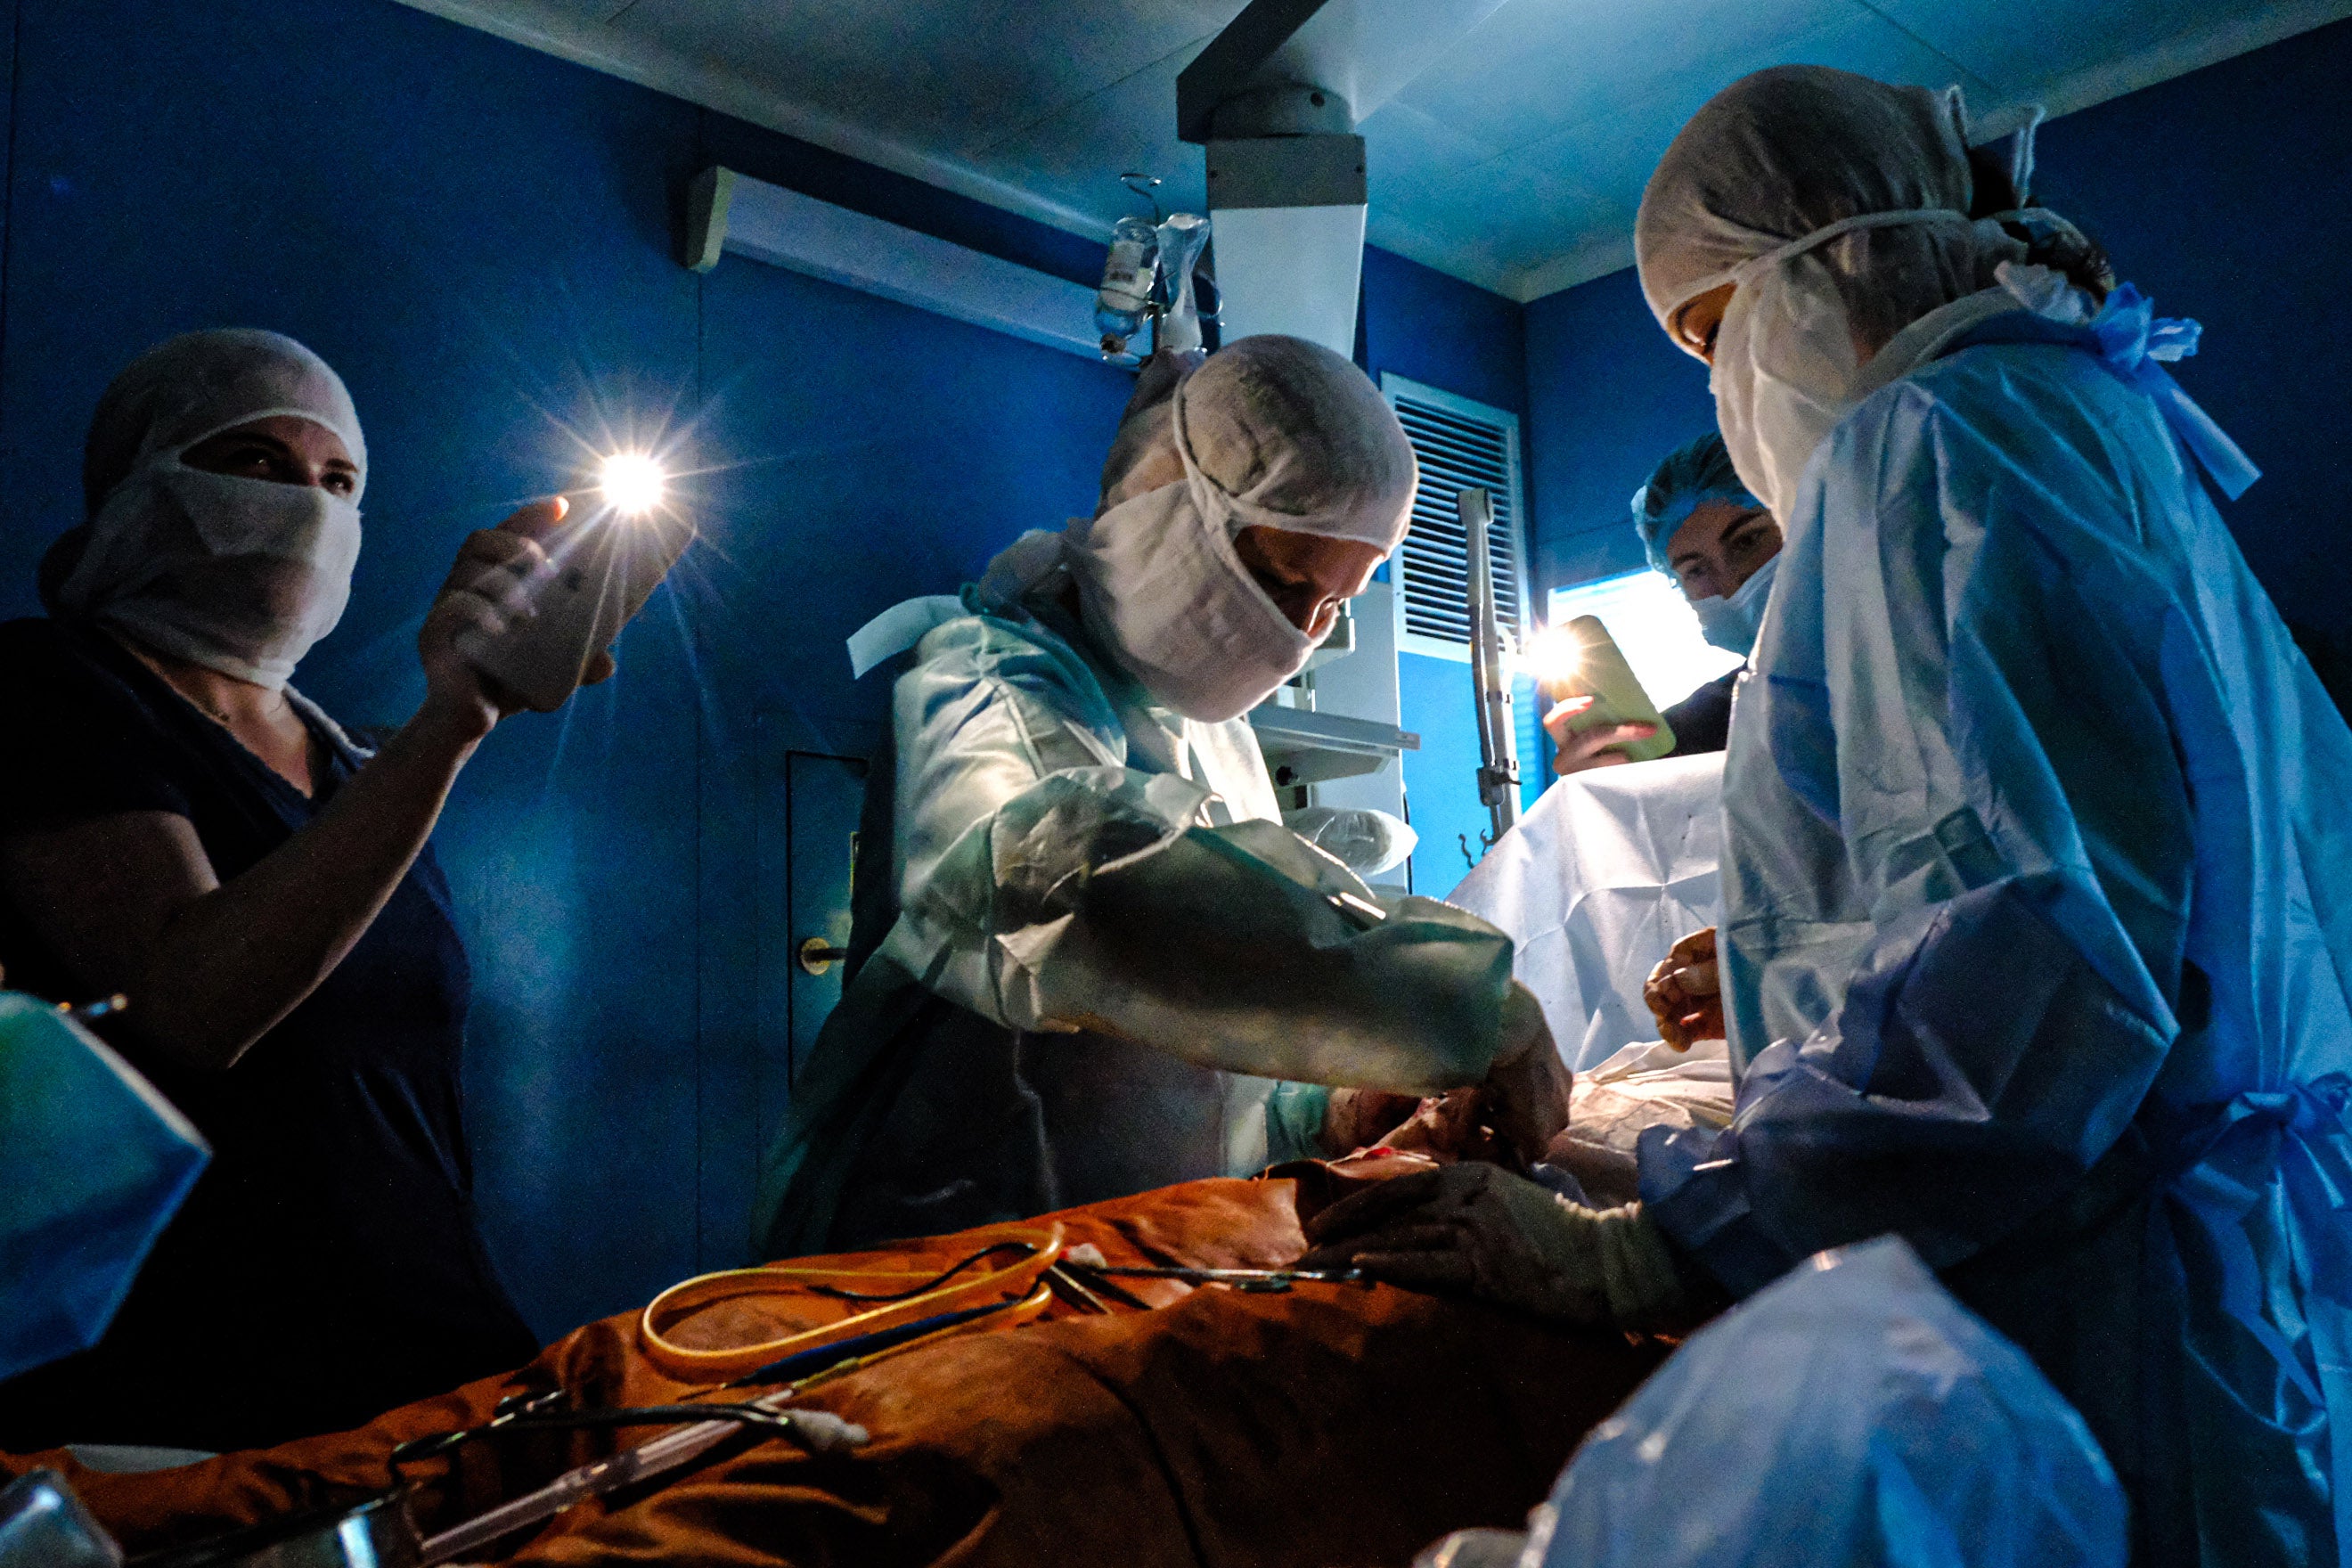 Un chirurgien effectuait une opération sous la lumière fournie par des téléphones portables dans un hôpital de Kiev, le 30 novembre 2022, lors d’une coupure d’électricité causée par l’une des nombreuses frappes russes ciblant des centrales électriques et autres infrastructures ukrainiennes.